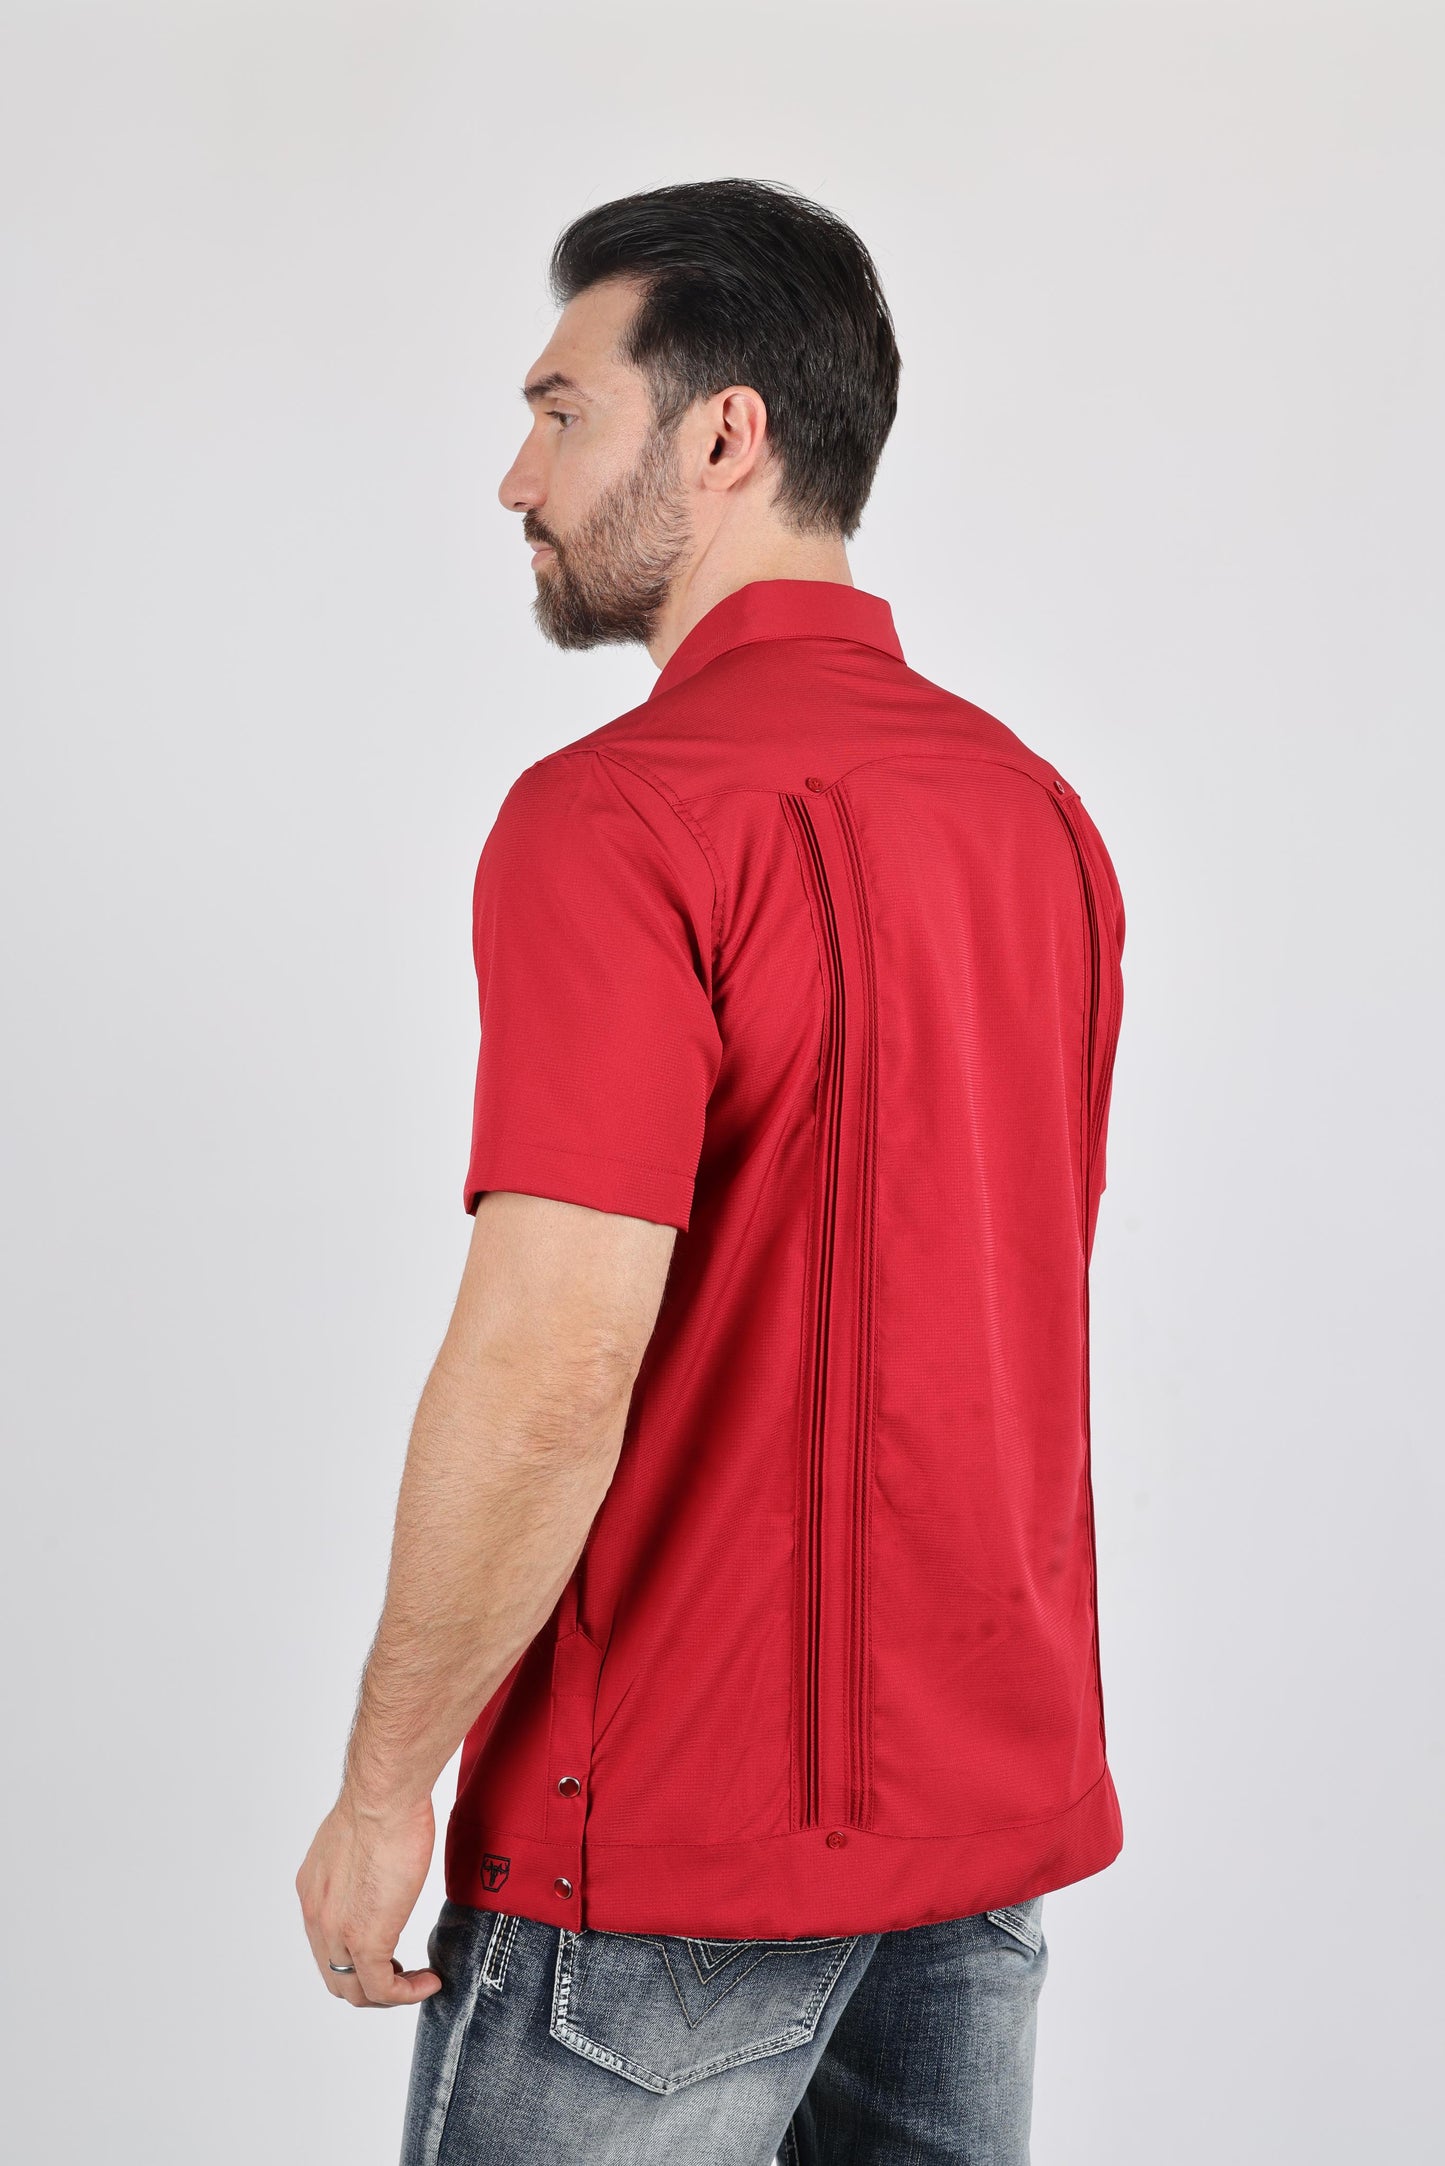 Men's Modern Red GUAYABERA Shirt